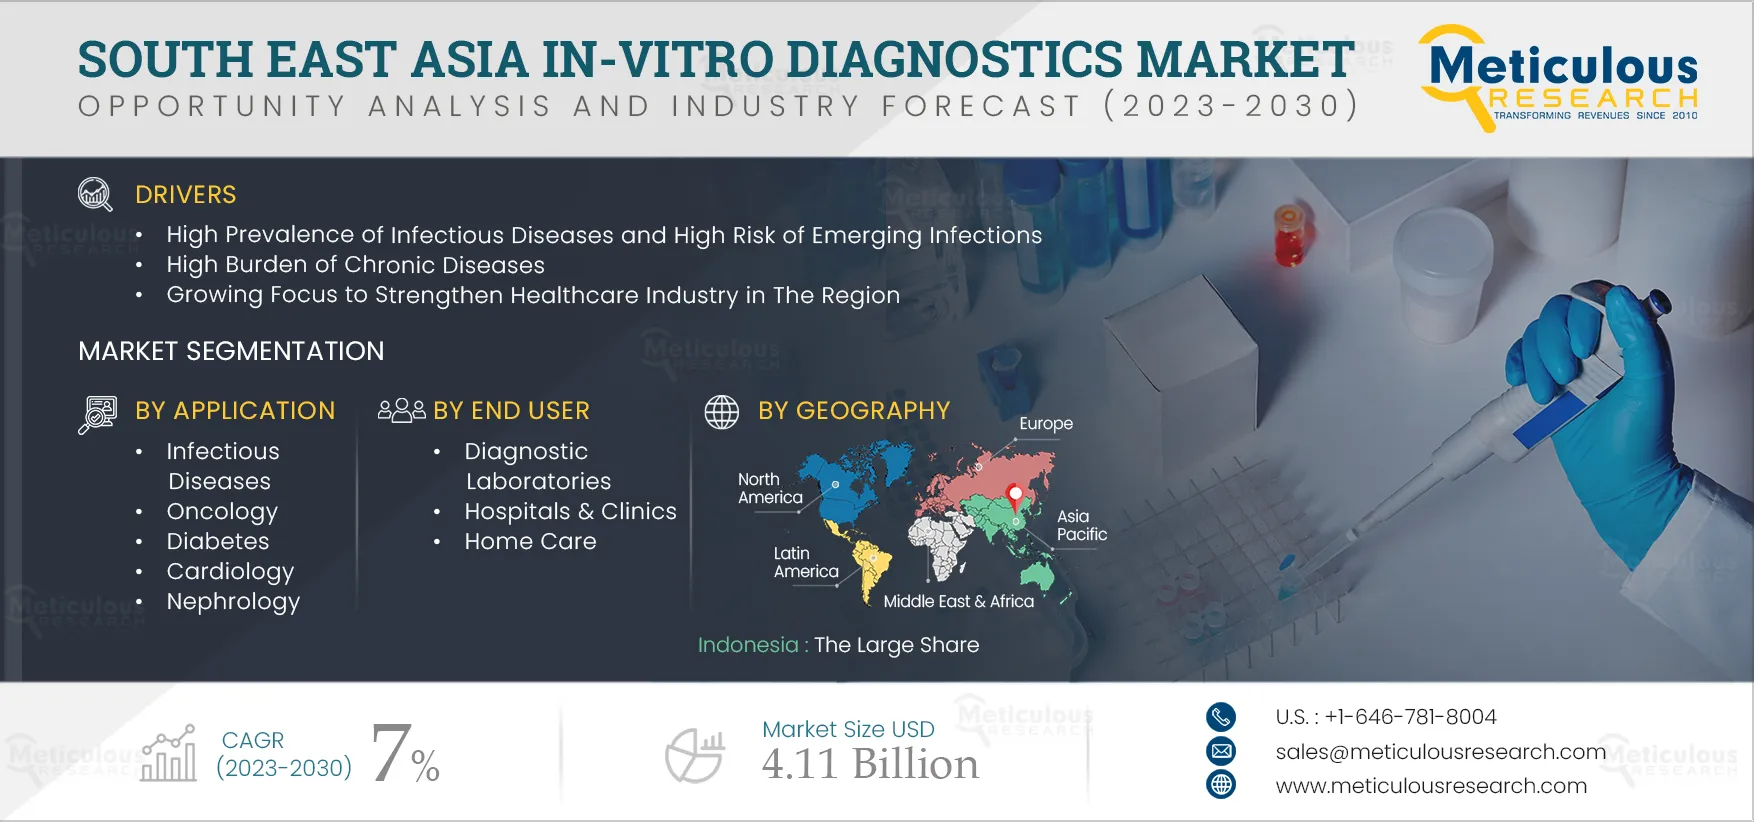 South East Asia In-vitro Diagnostics Market